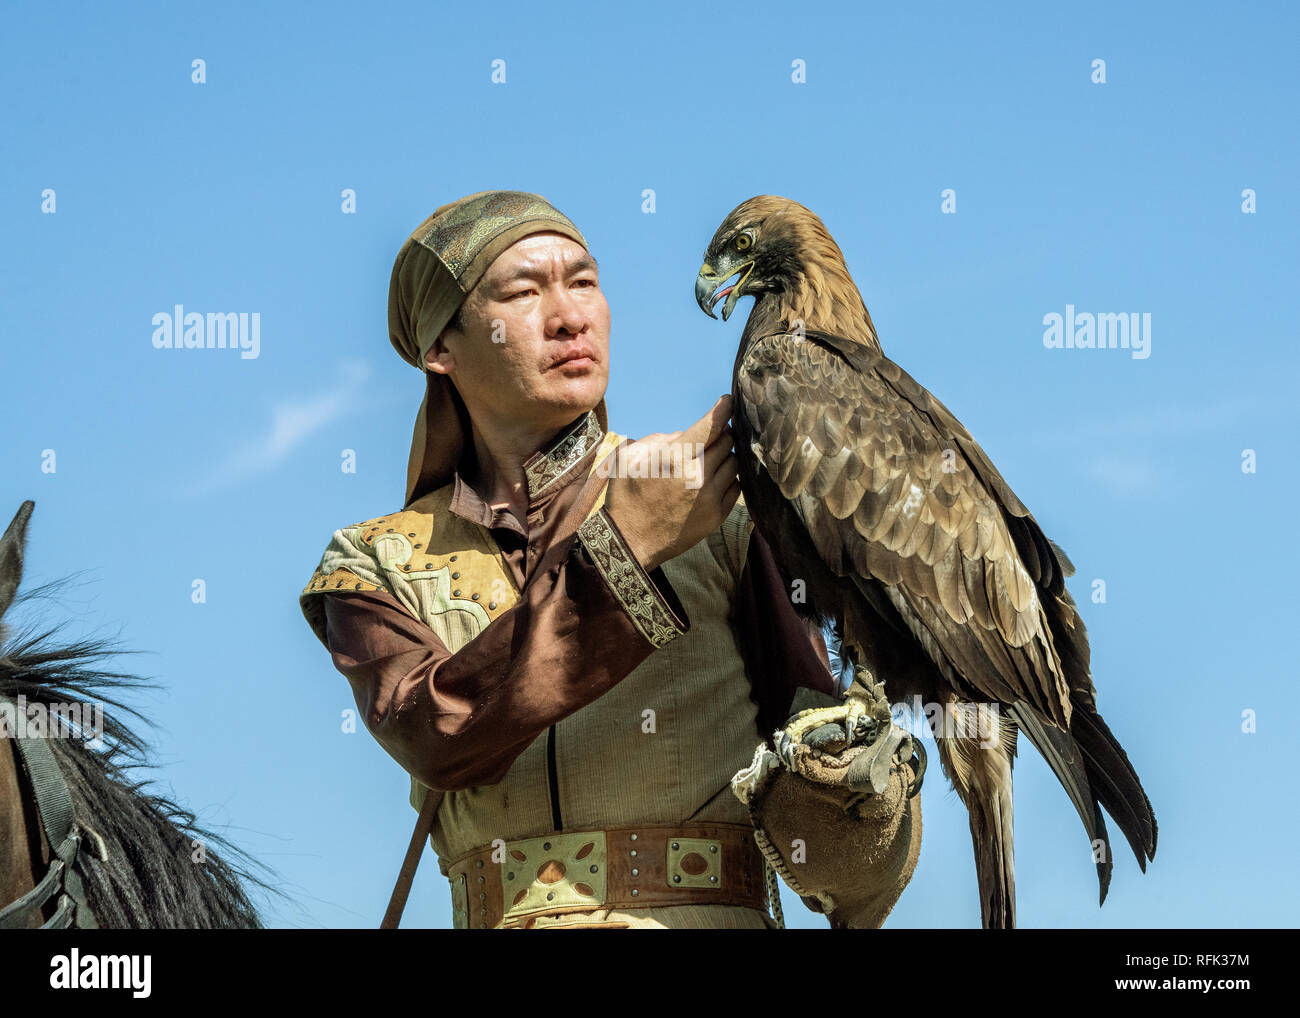 Eagle kazakhs trainer des liens avec son aigle, Sunkar Centre Falcon, Almaty, Kazakhstan Banque D'Images